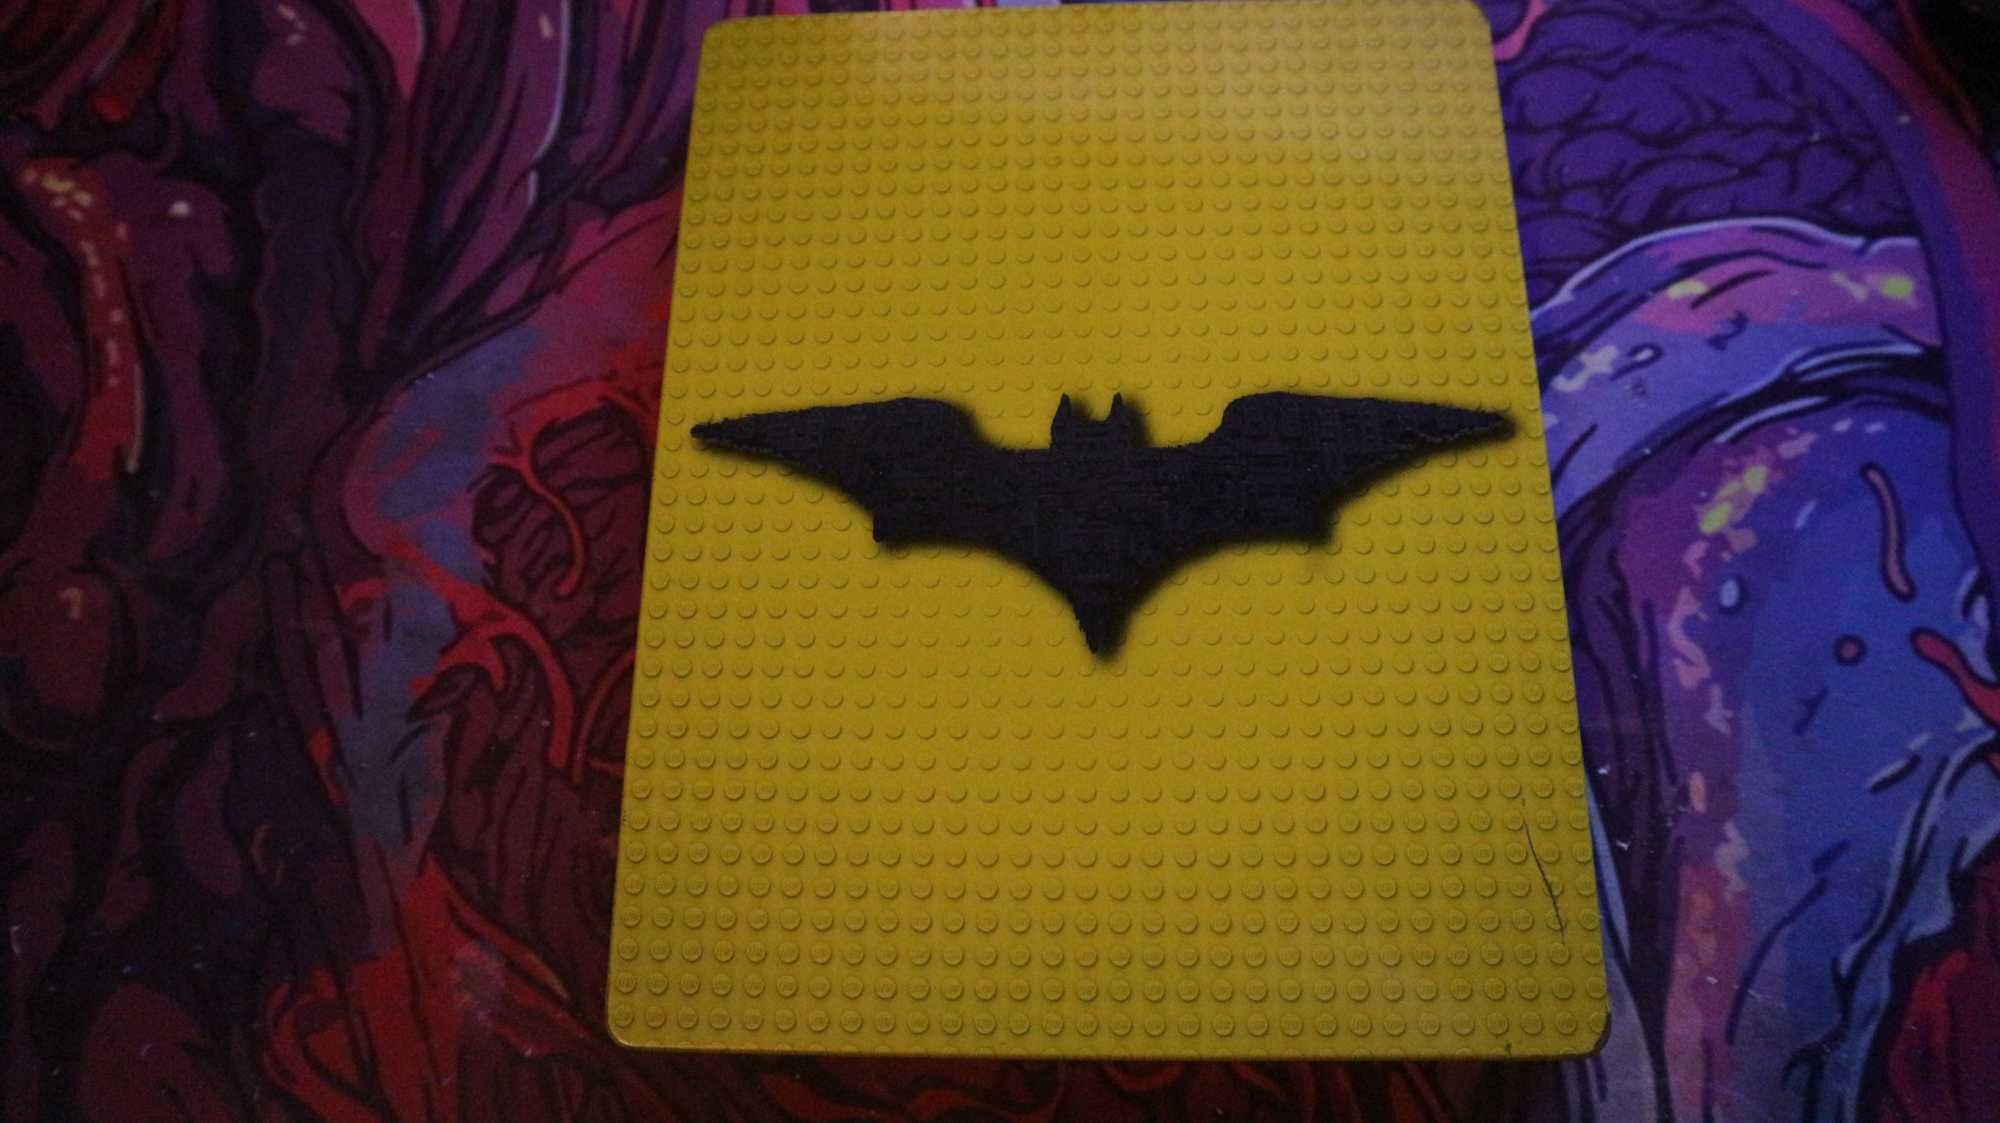 Lego Batman Movie Blu-ray Disc